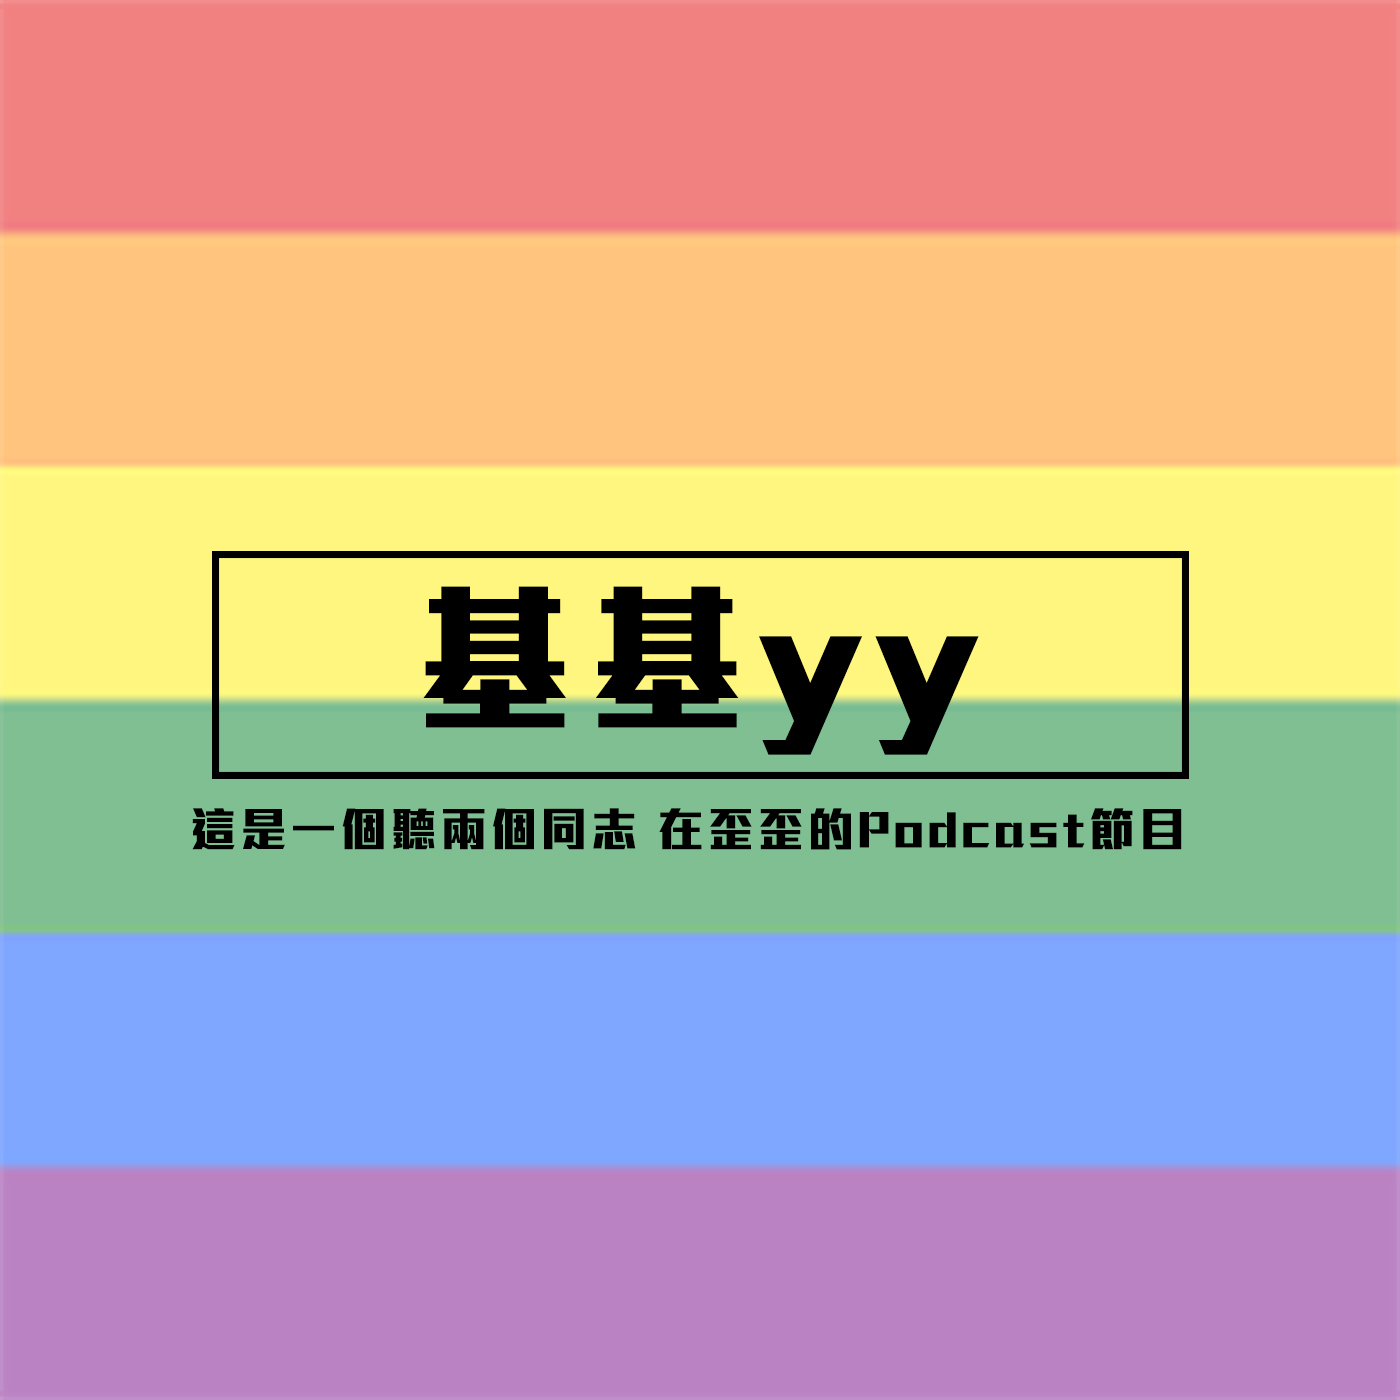 基基yy | EP.23 菜鳥驛站遇到愛 feat.lucas